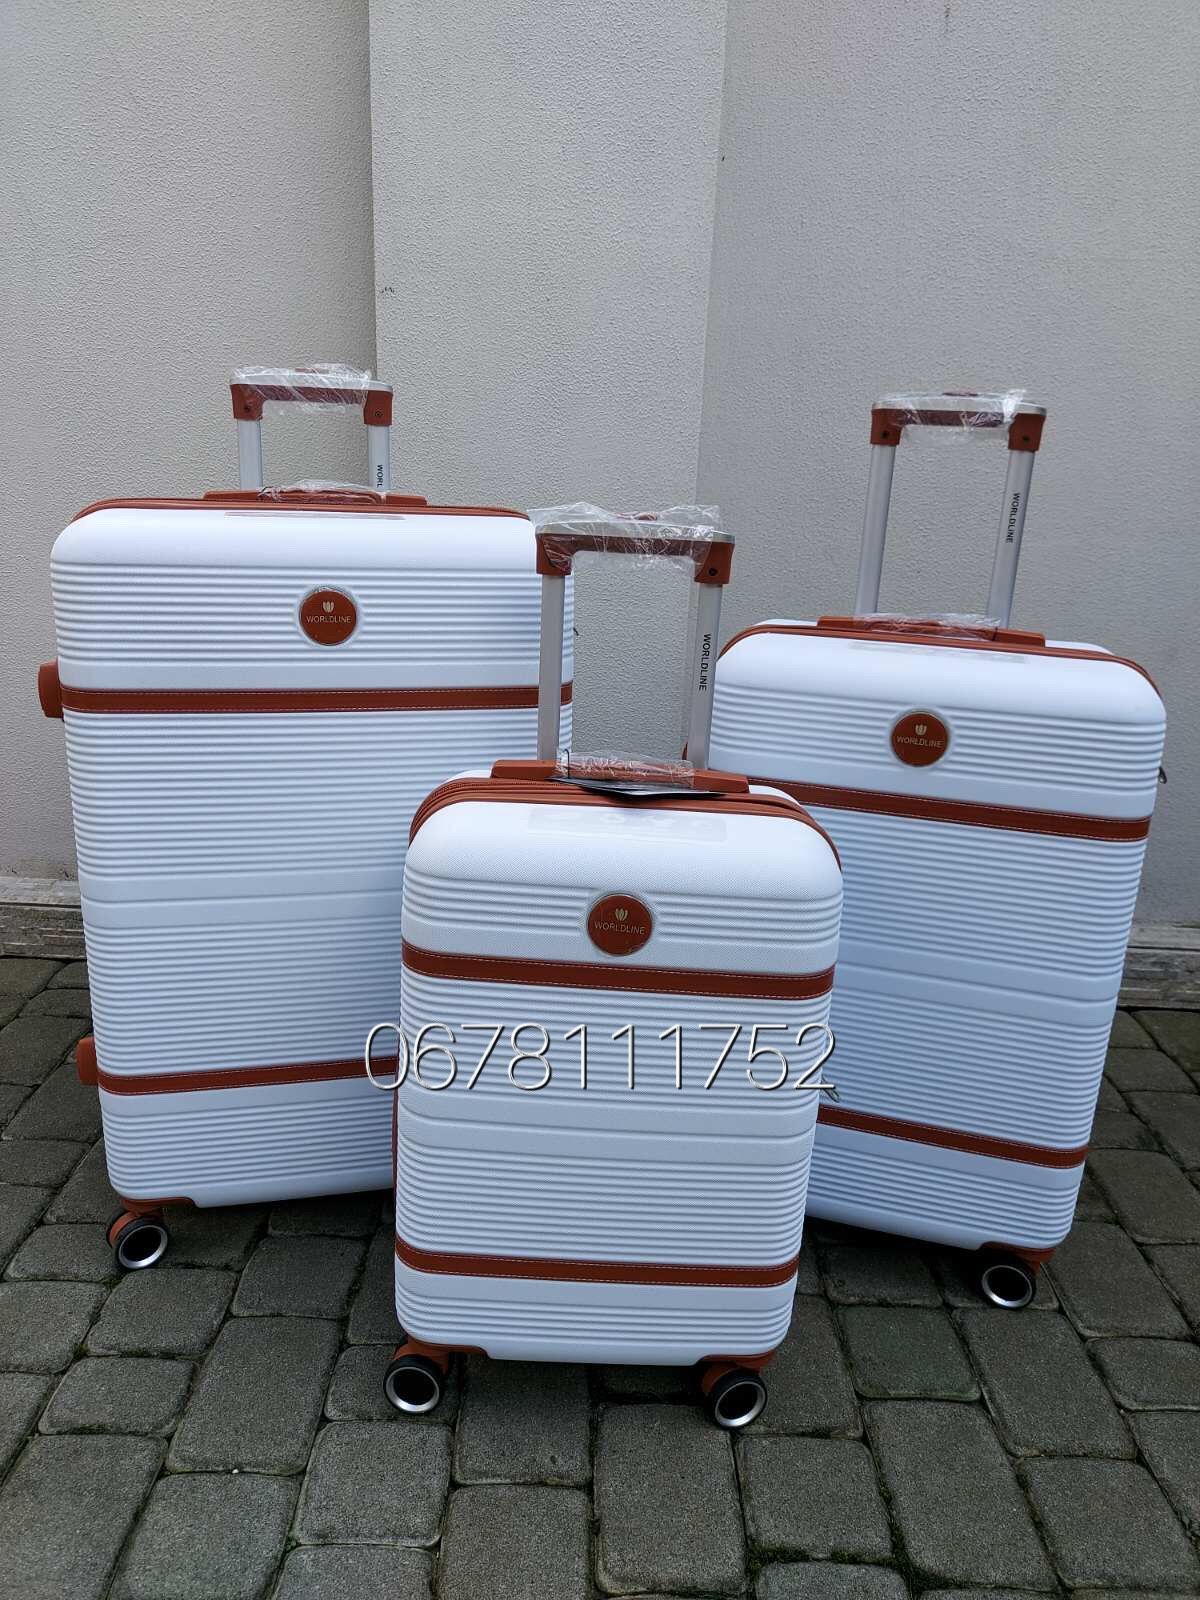 NEW від AIRTEX WORDLINE 629 Франція валізи чемоданы сумки на колесах